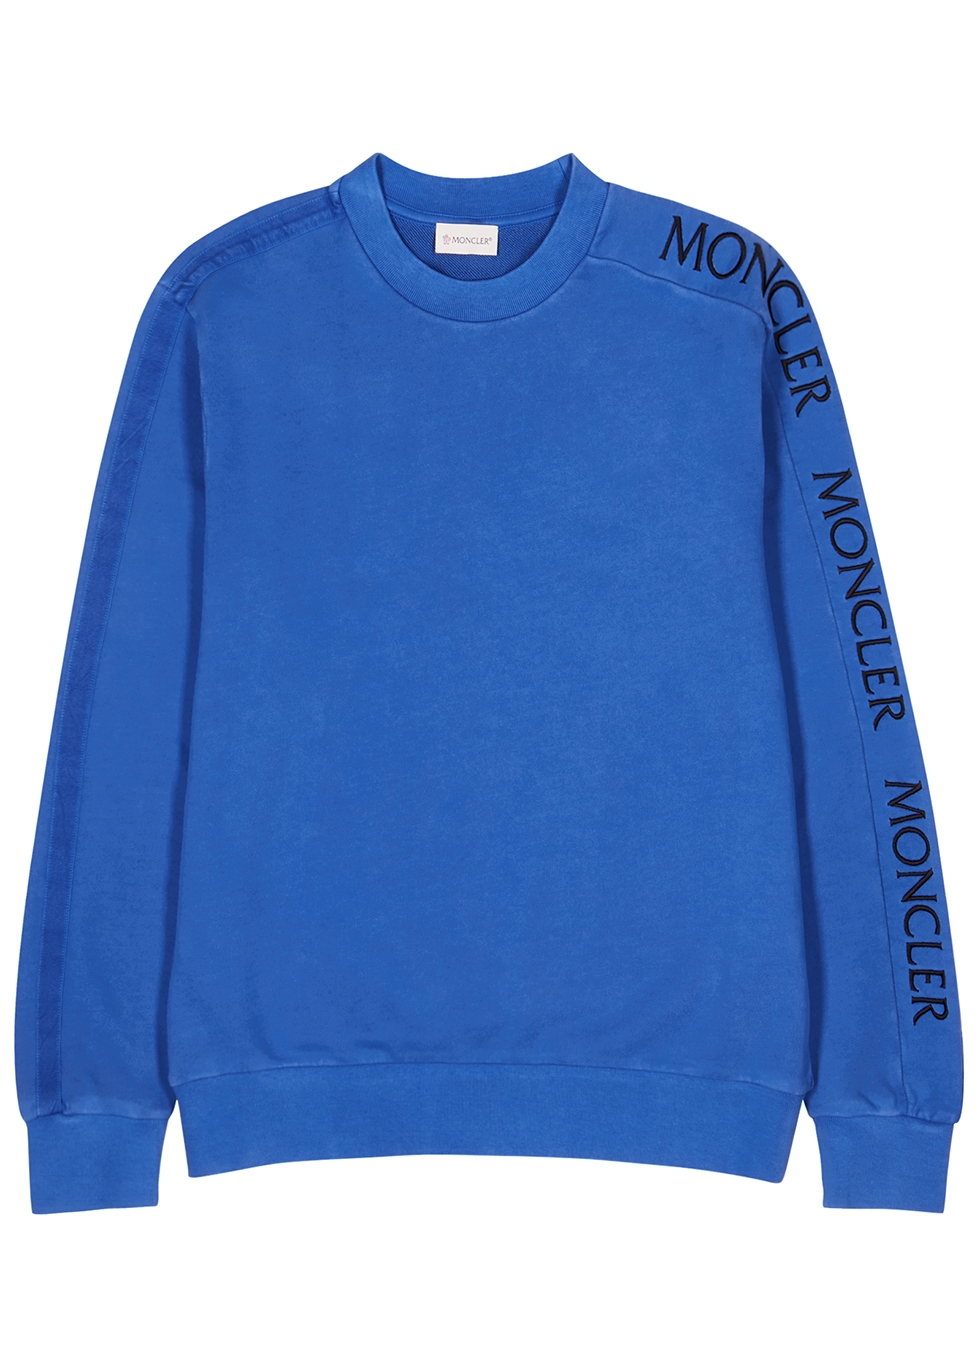 moncler sweatshirt